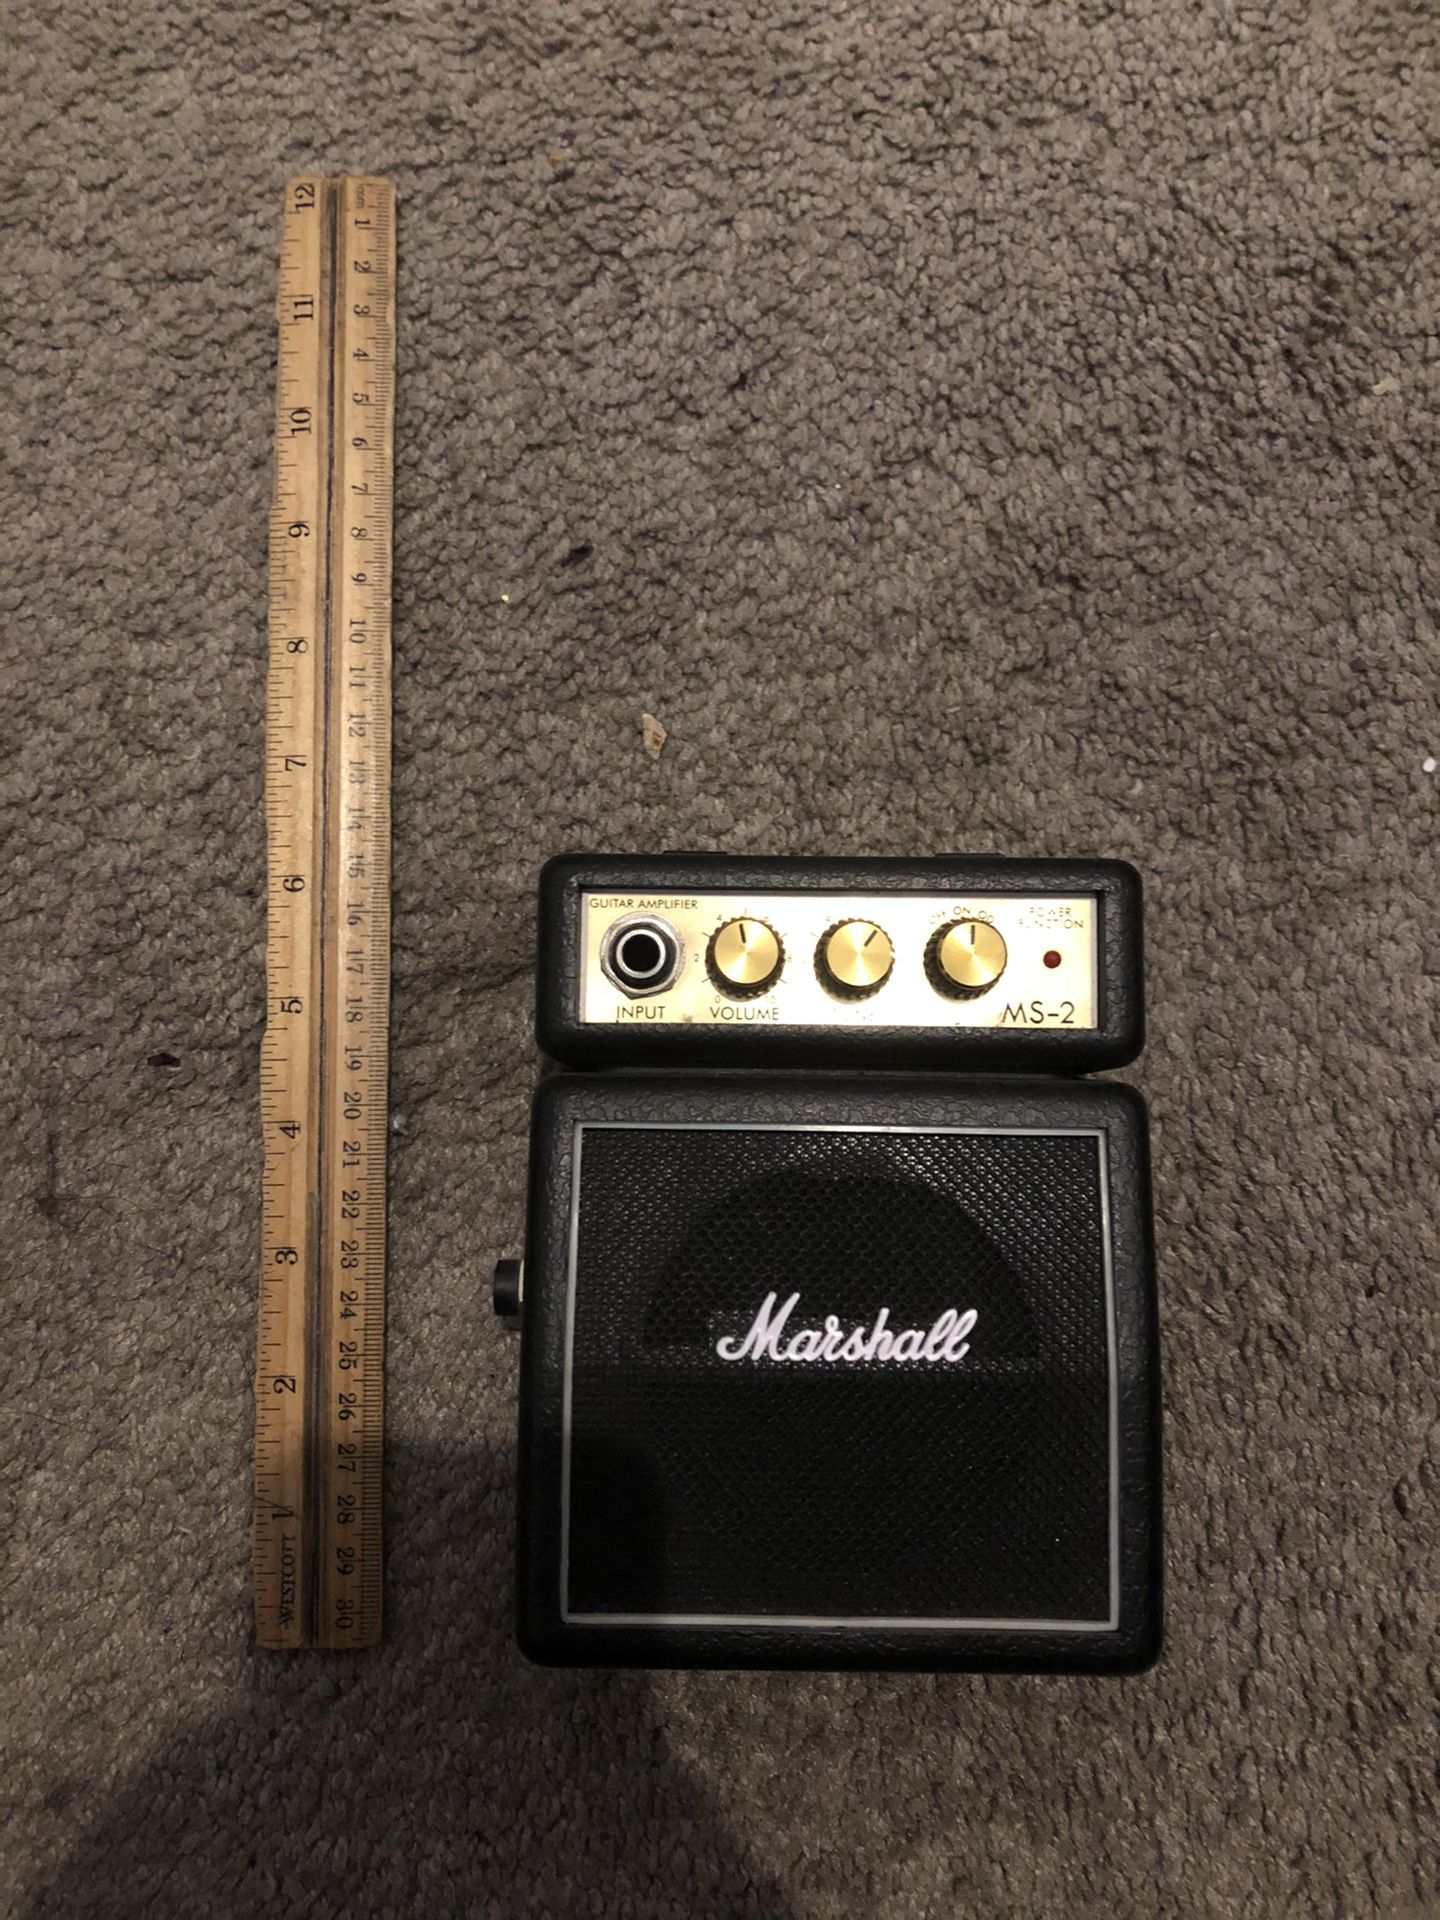 Marshal MS-2 Miniguitar amp